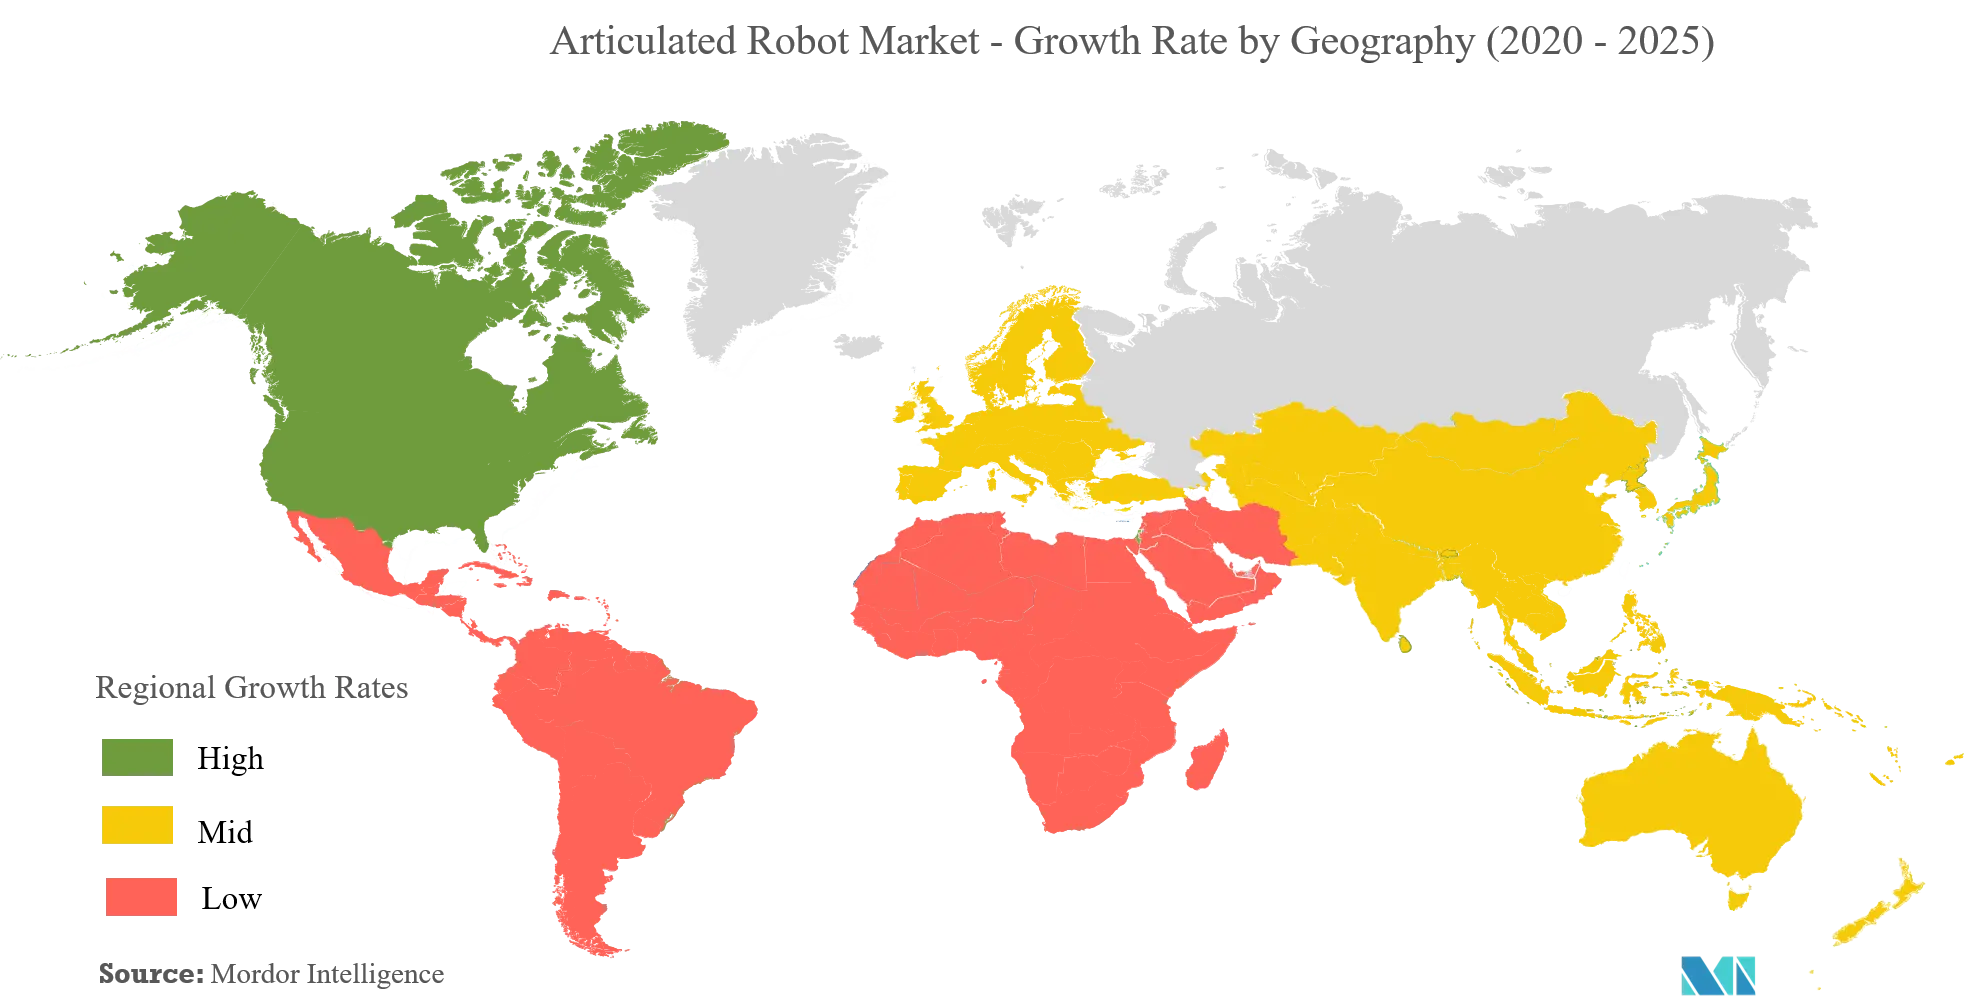 Markt für Knickarmroboter - Wachstumsrate nach Geografie (2020 - 2025)